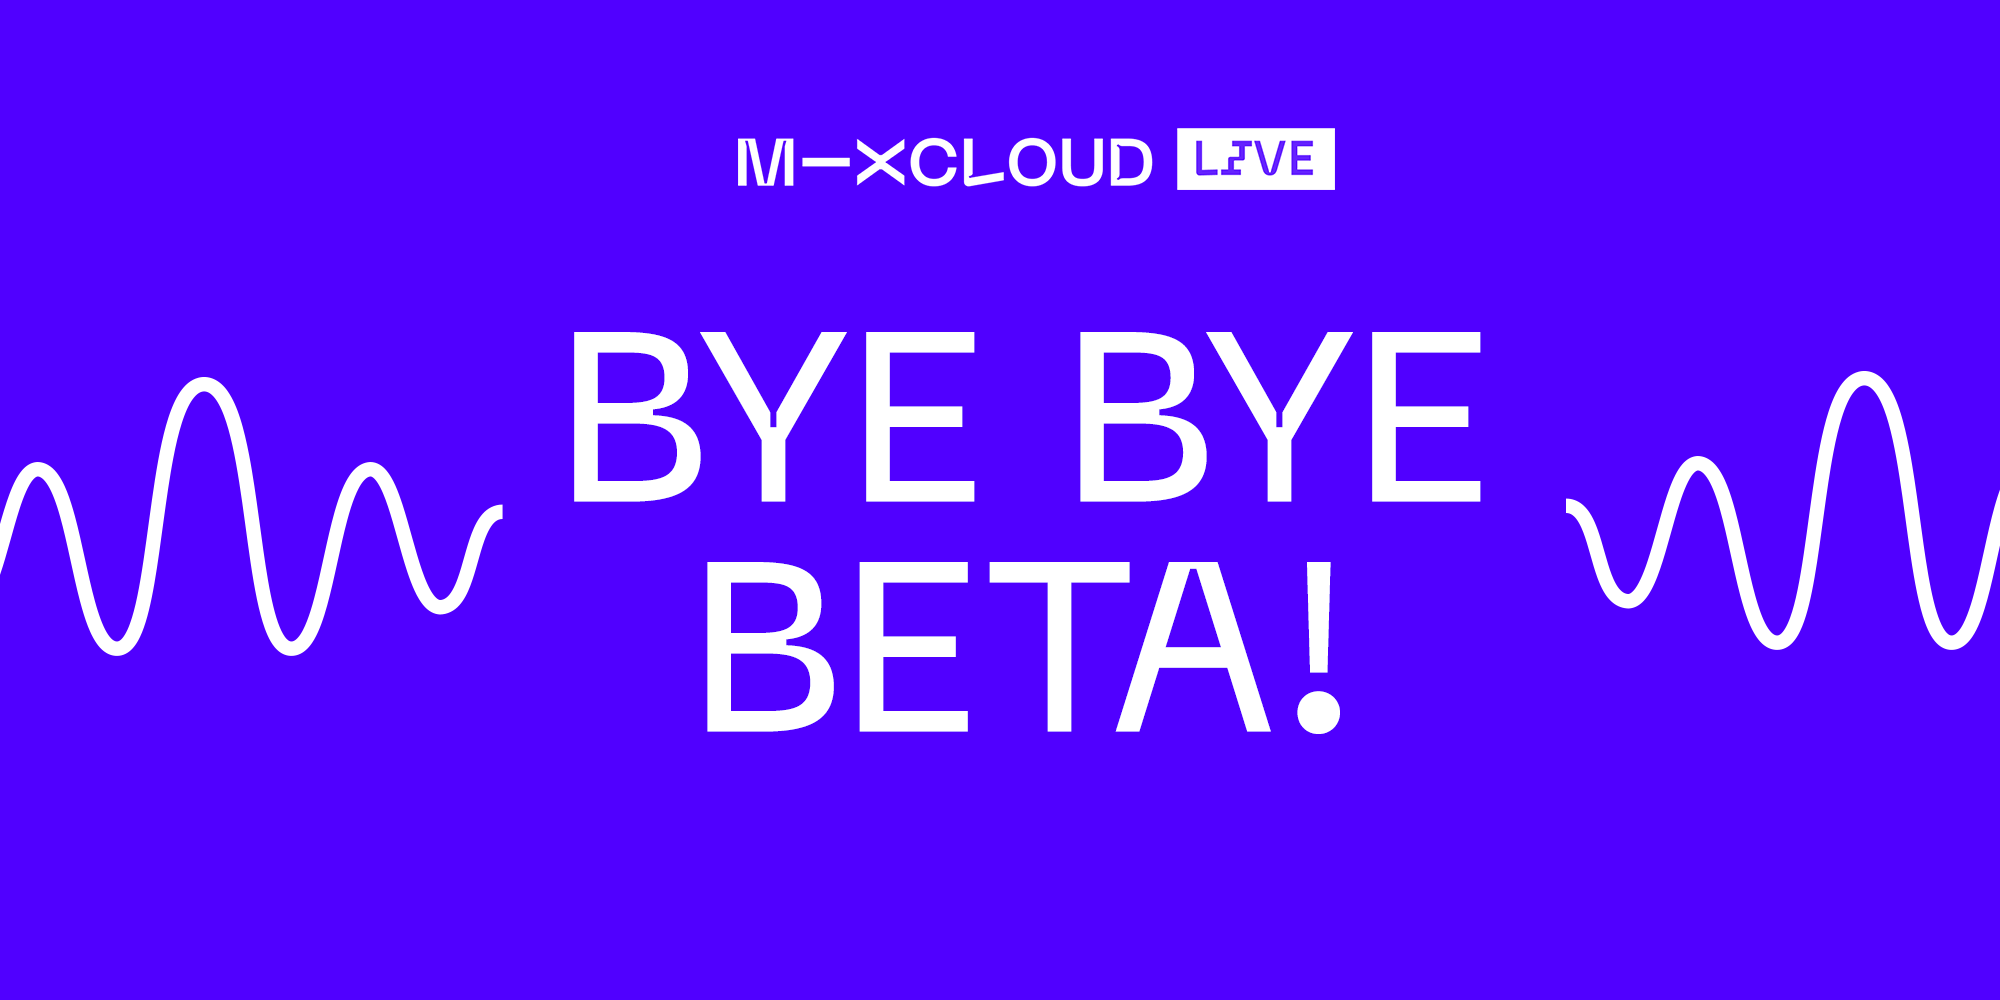 Bye Bye, Mixcloud LIVE Beta!